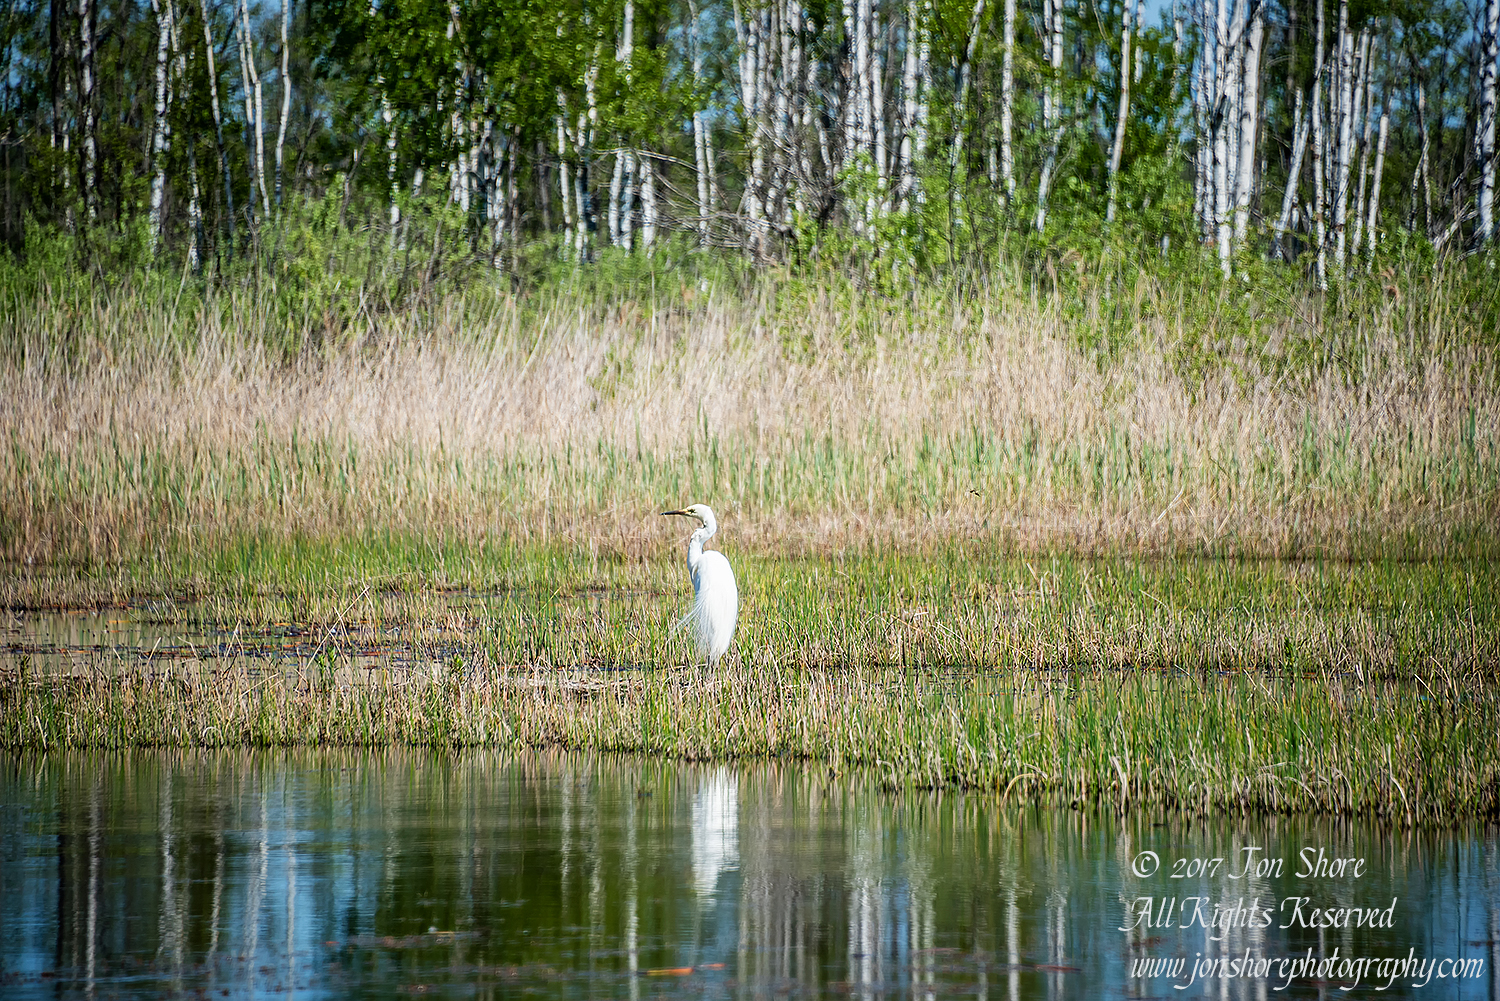 Great White Egret. Kemeri National Park Latvia. Nikkor 300mm